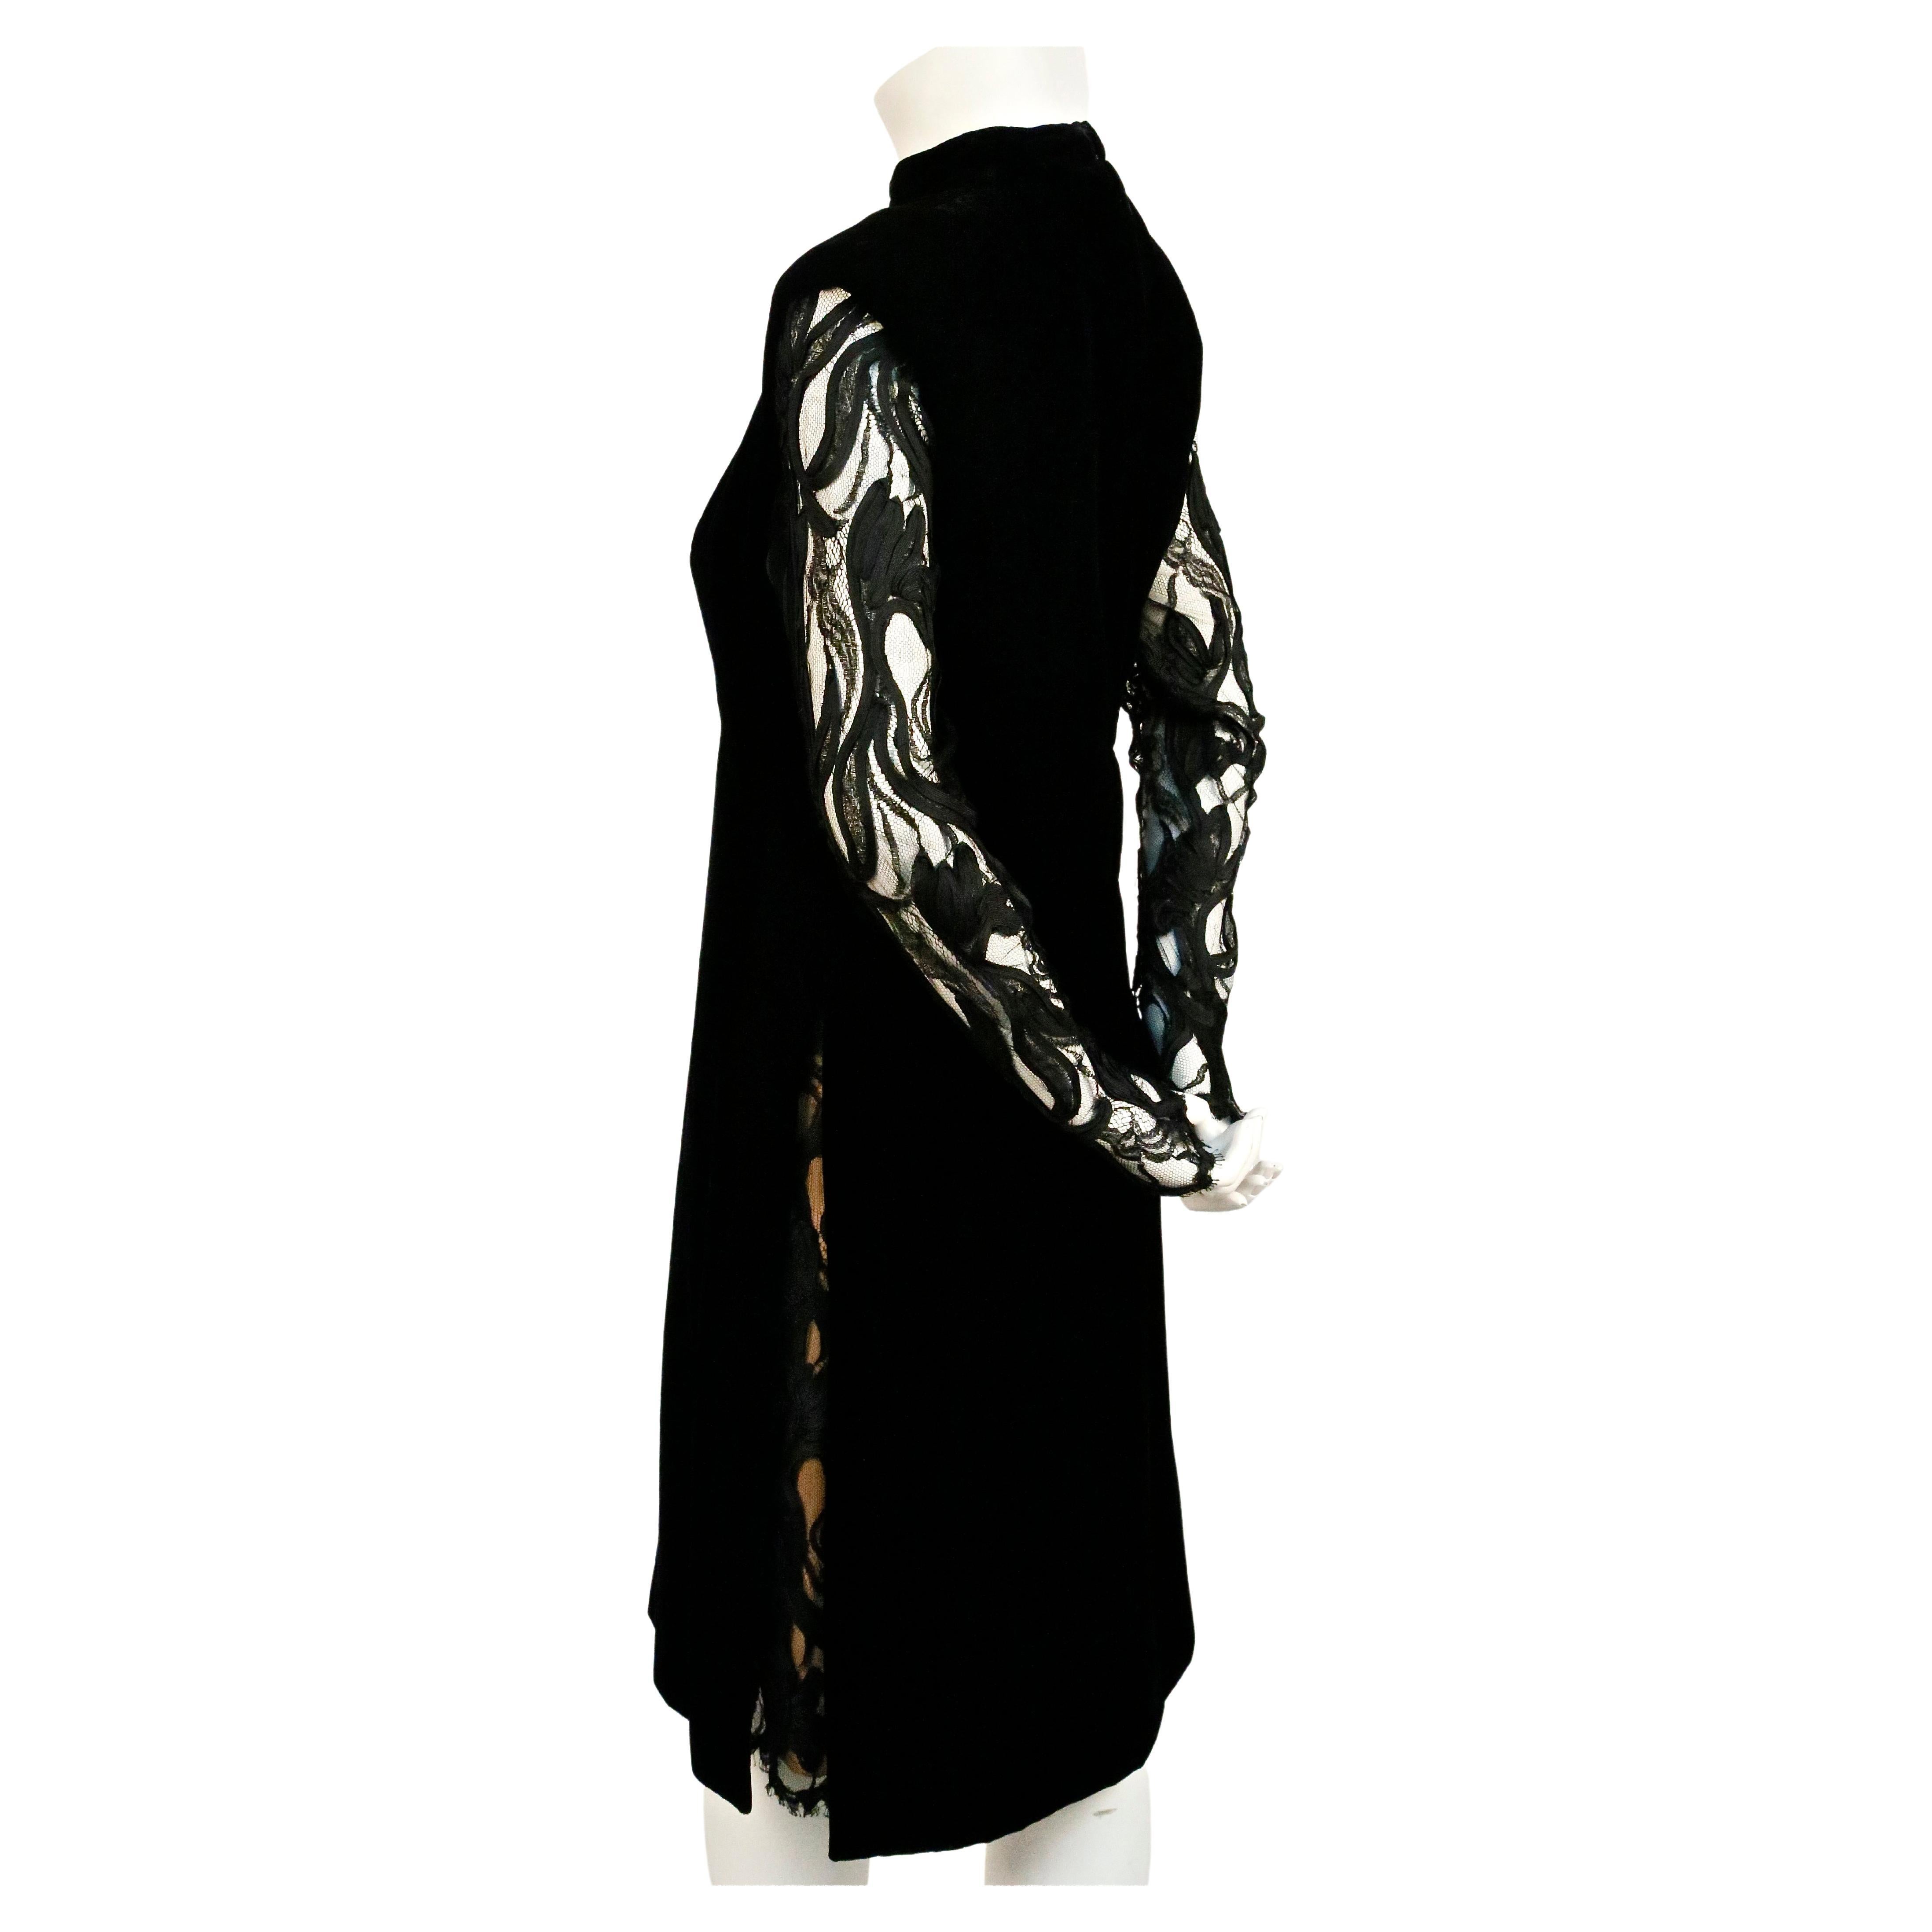 Black 1960's PIERRE BALMAIN haute couture velvet dress with sheer lace detail